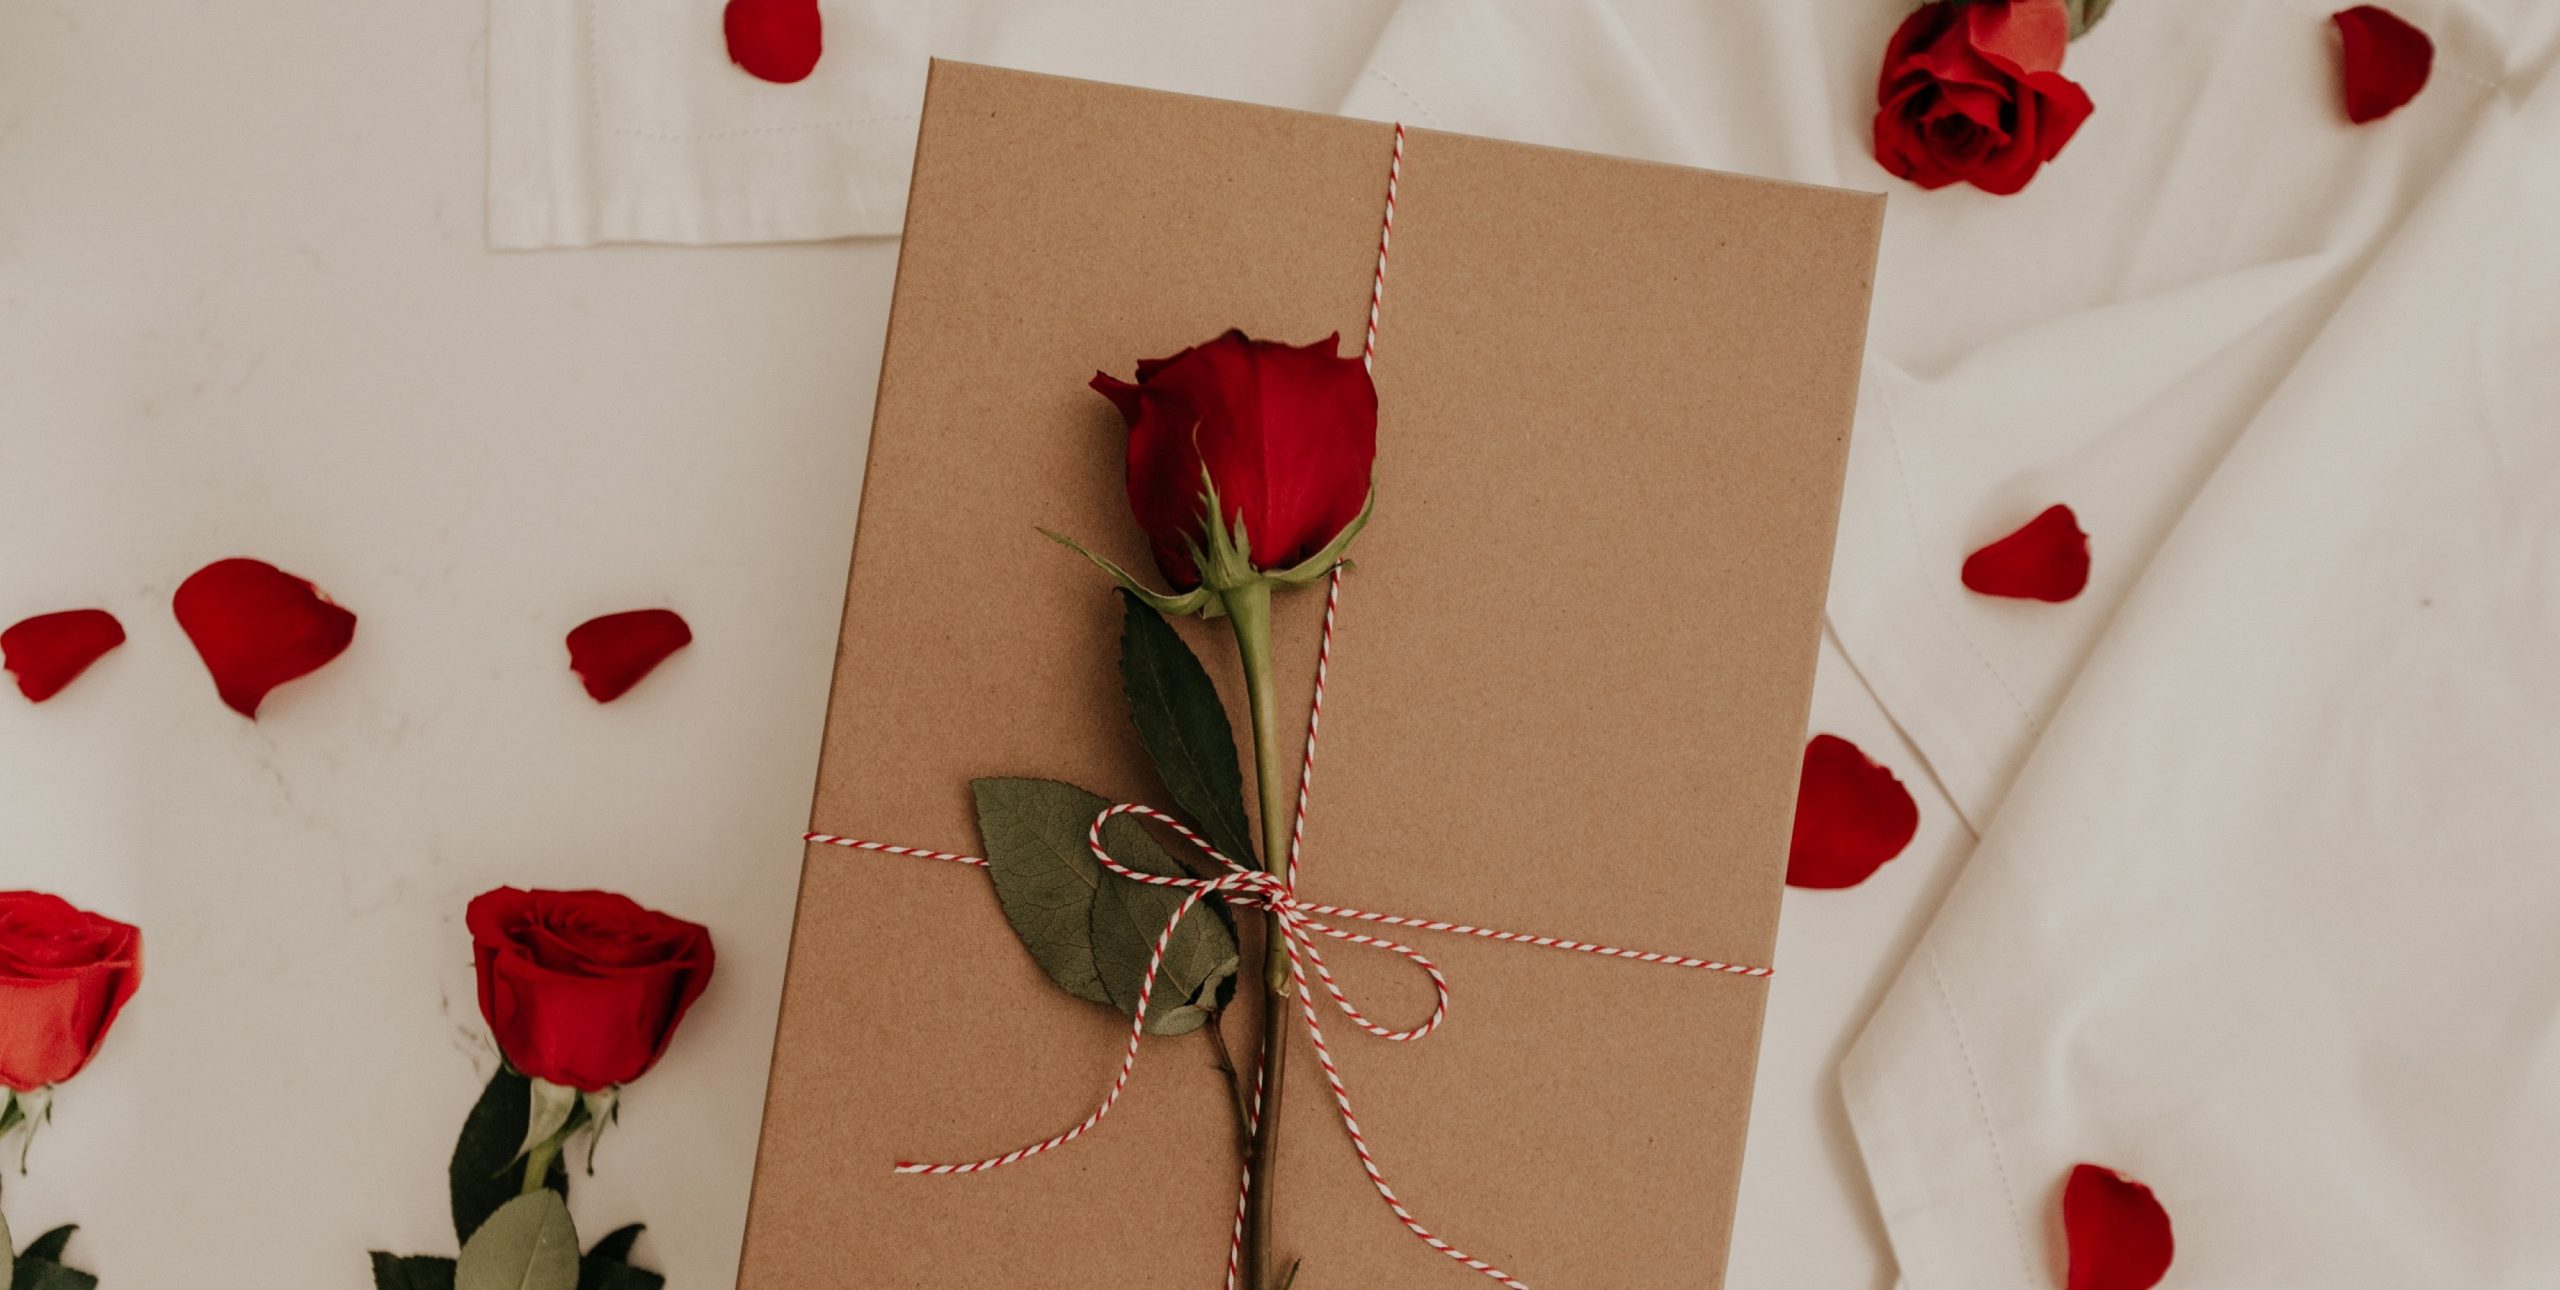 15 regalos para San Valentín sin gastar dinero - Sorprende a tu pareja con  las ideas más originales